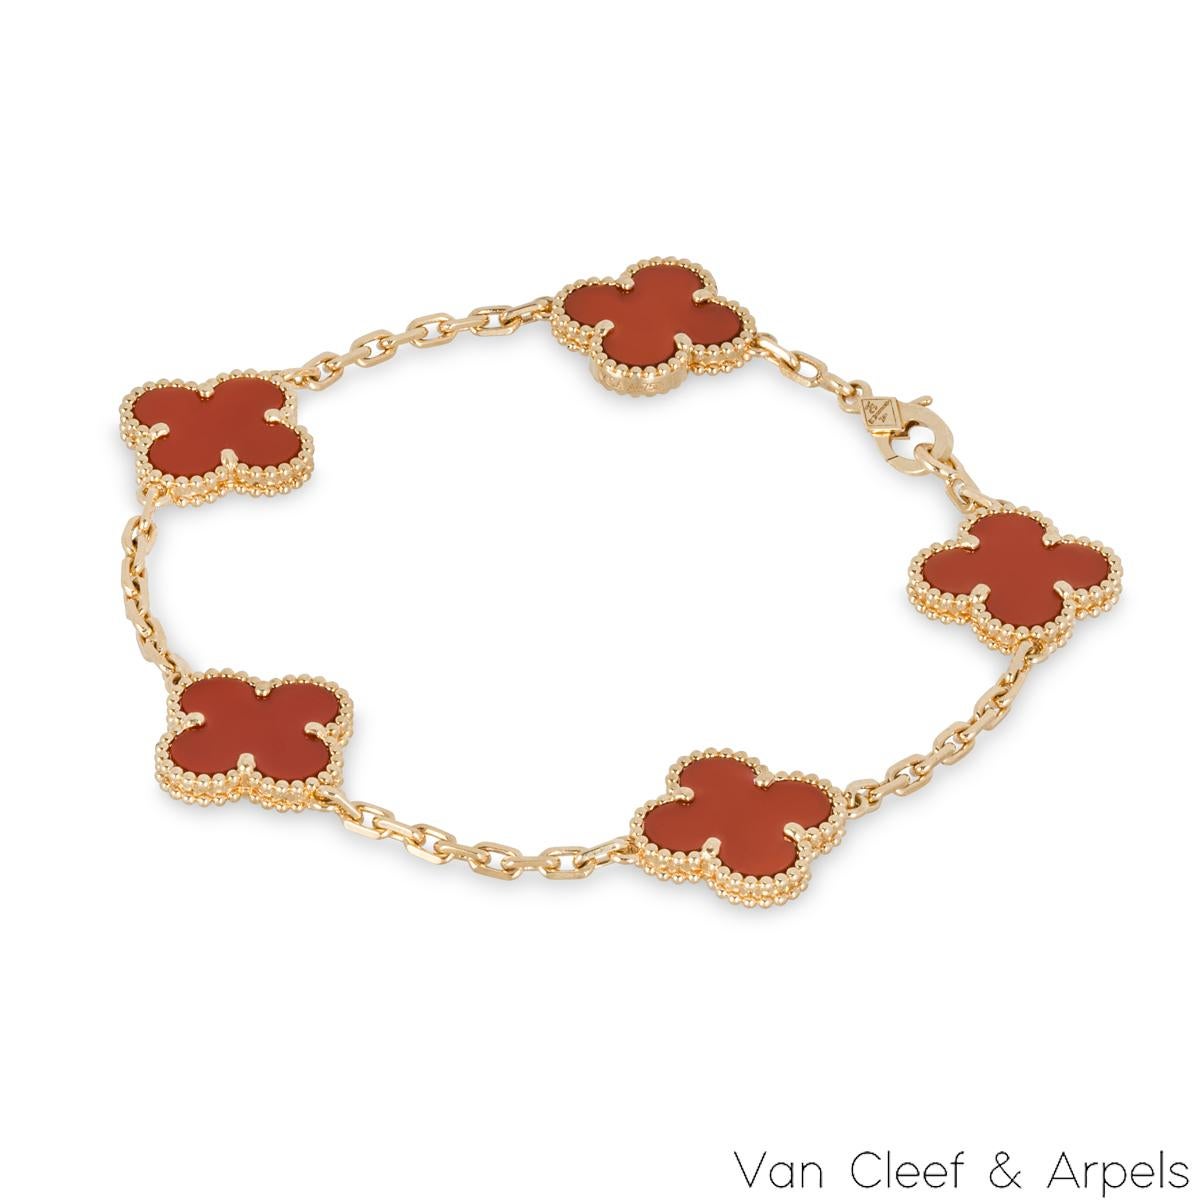 Ein schönes Armband aus 18k Gelbgold mit Karneol aus der Vintage Alhambra Collection von Van Cleef & Arpels. Das Armband zeigt 5 ikonische Kleeblattmotive, jedes mit einer Perlenkante und einer Karneol-Intarsie, die über die gesamte Länge der Kette